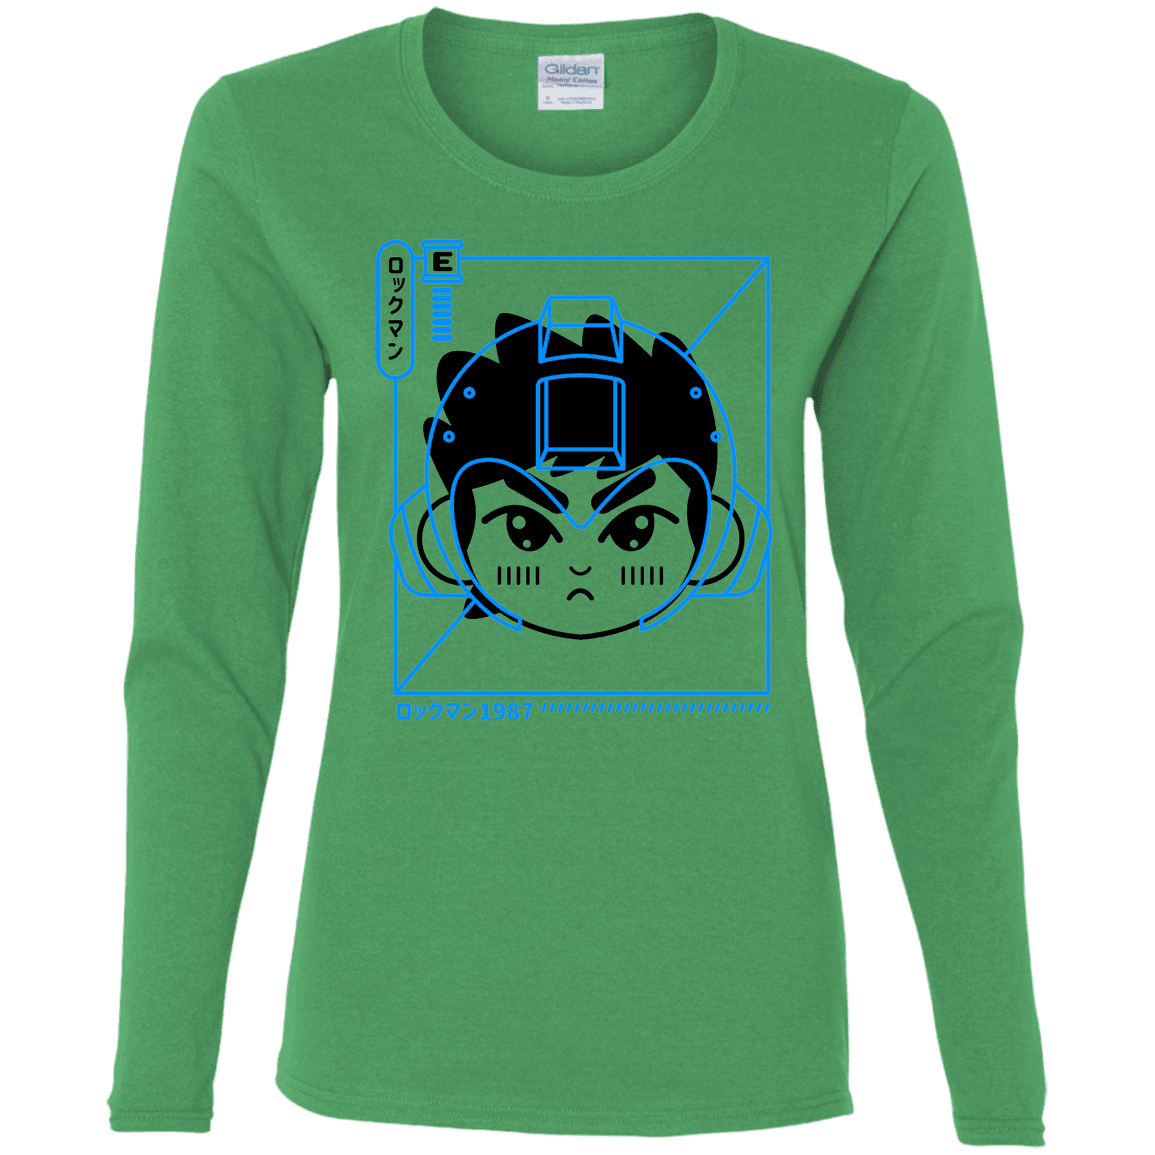 T-Shirts Irish Green / S Cyber Helmet Rokkuman Women's Long Sleeve T-Shirt